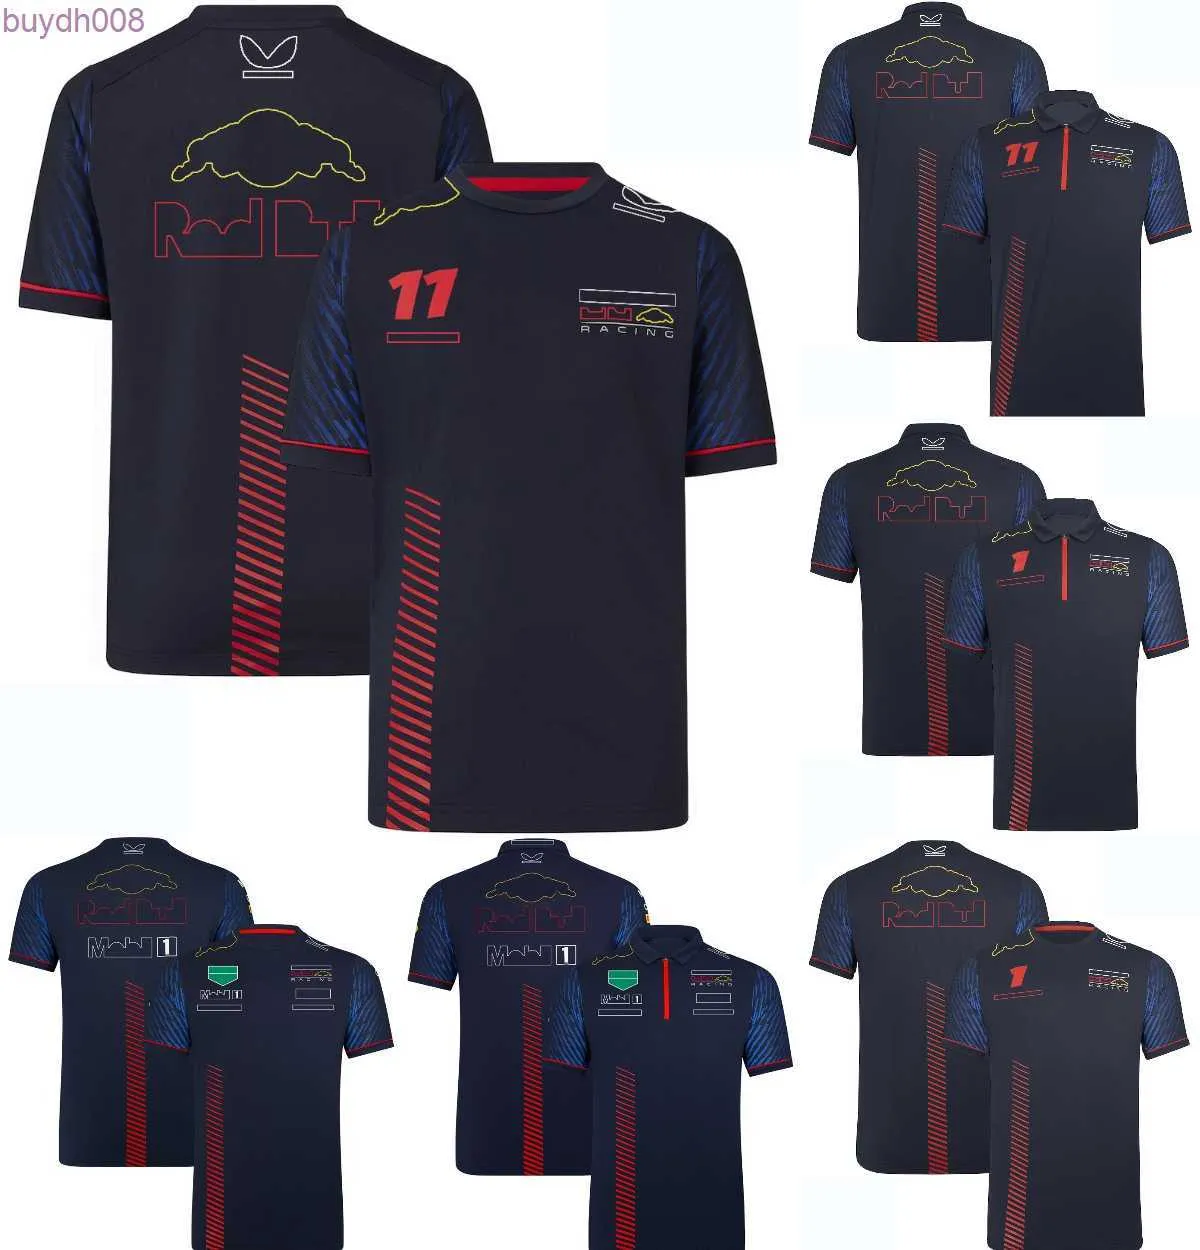 Sih9 Polos Masculinos F1 Equipe Masculina Camiseta Polo Fórmula 1 Terno de Corrida Camiseta 1 e 11 Motorista Fan Top Camisetas Jersey Moto Roupas de Motocicleta Personalizáveis